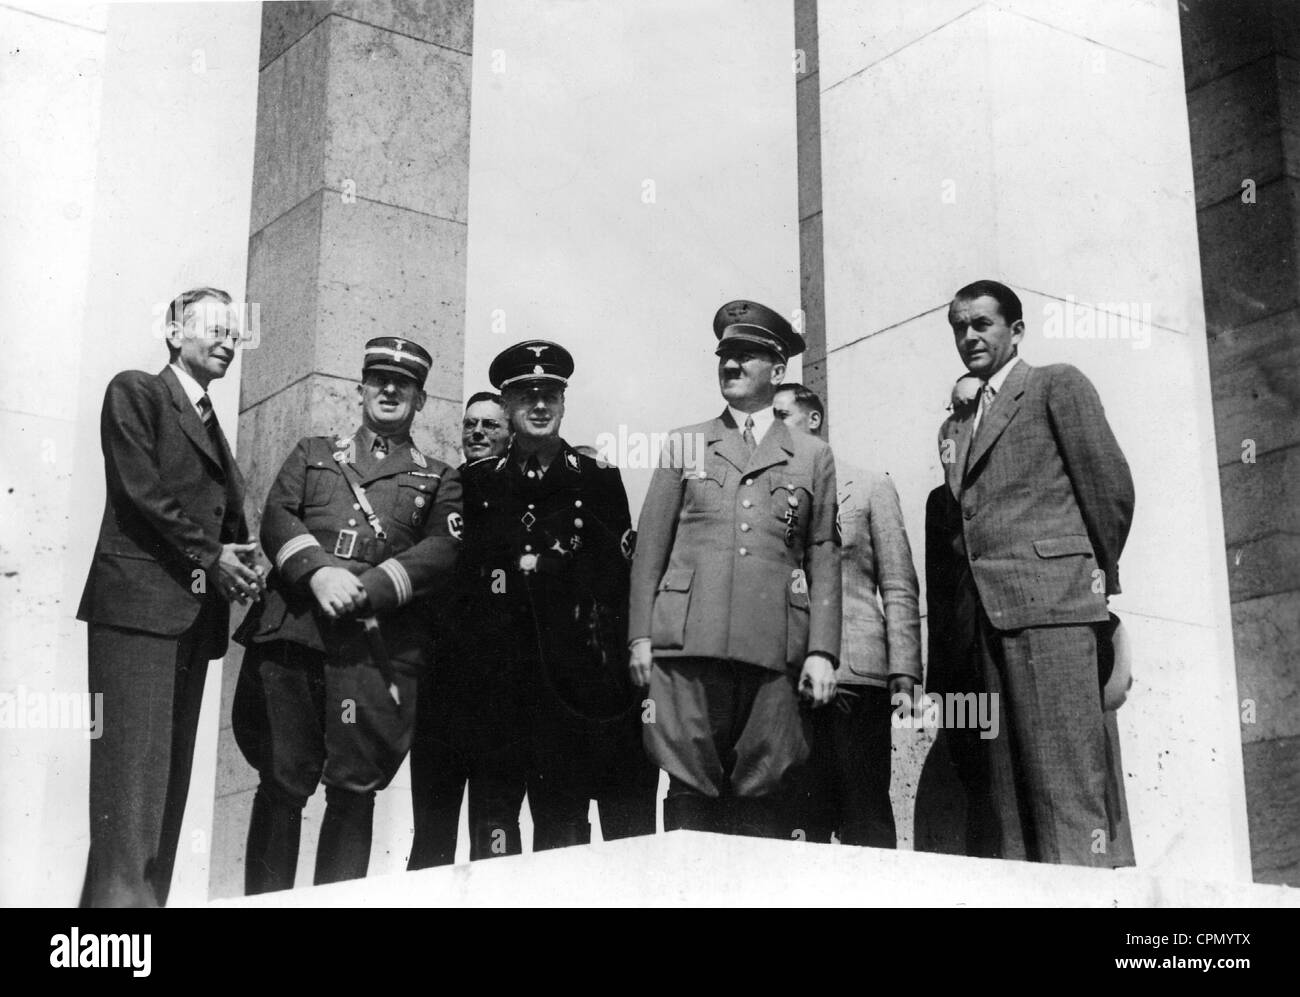 Bruckmann, Liebel, Joachim von Ribbentrop, Adolf Hitler, Albert Speer in Nuremberg, 1937 Stock Photo